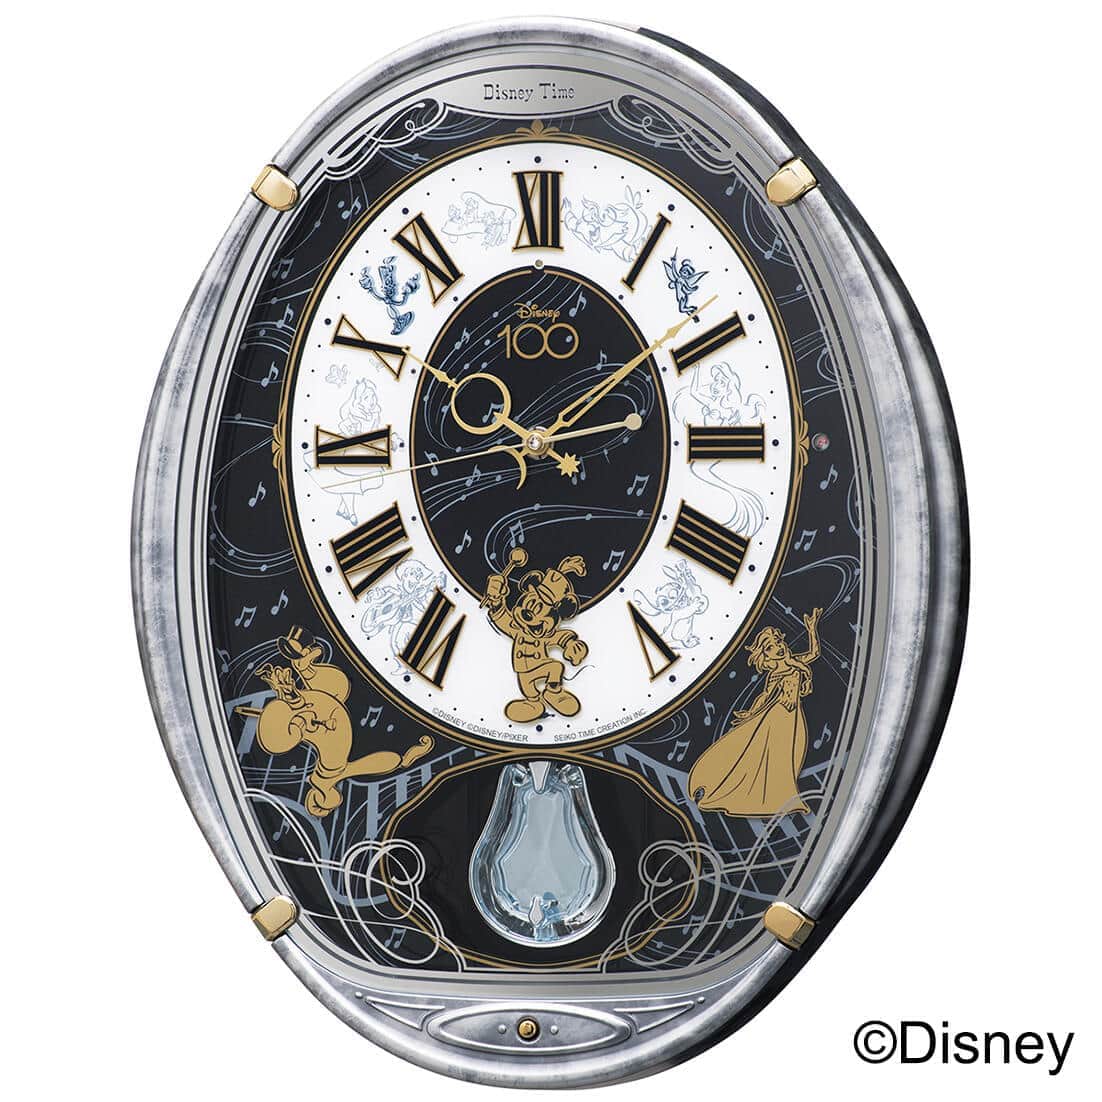 ディズニー100周年記念の掛け時計 正時に「ミッキーマウス